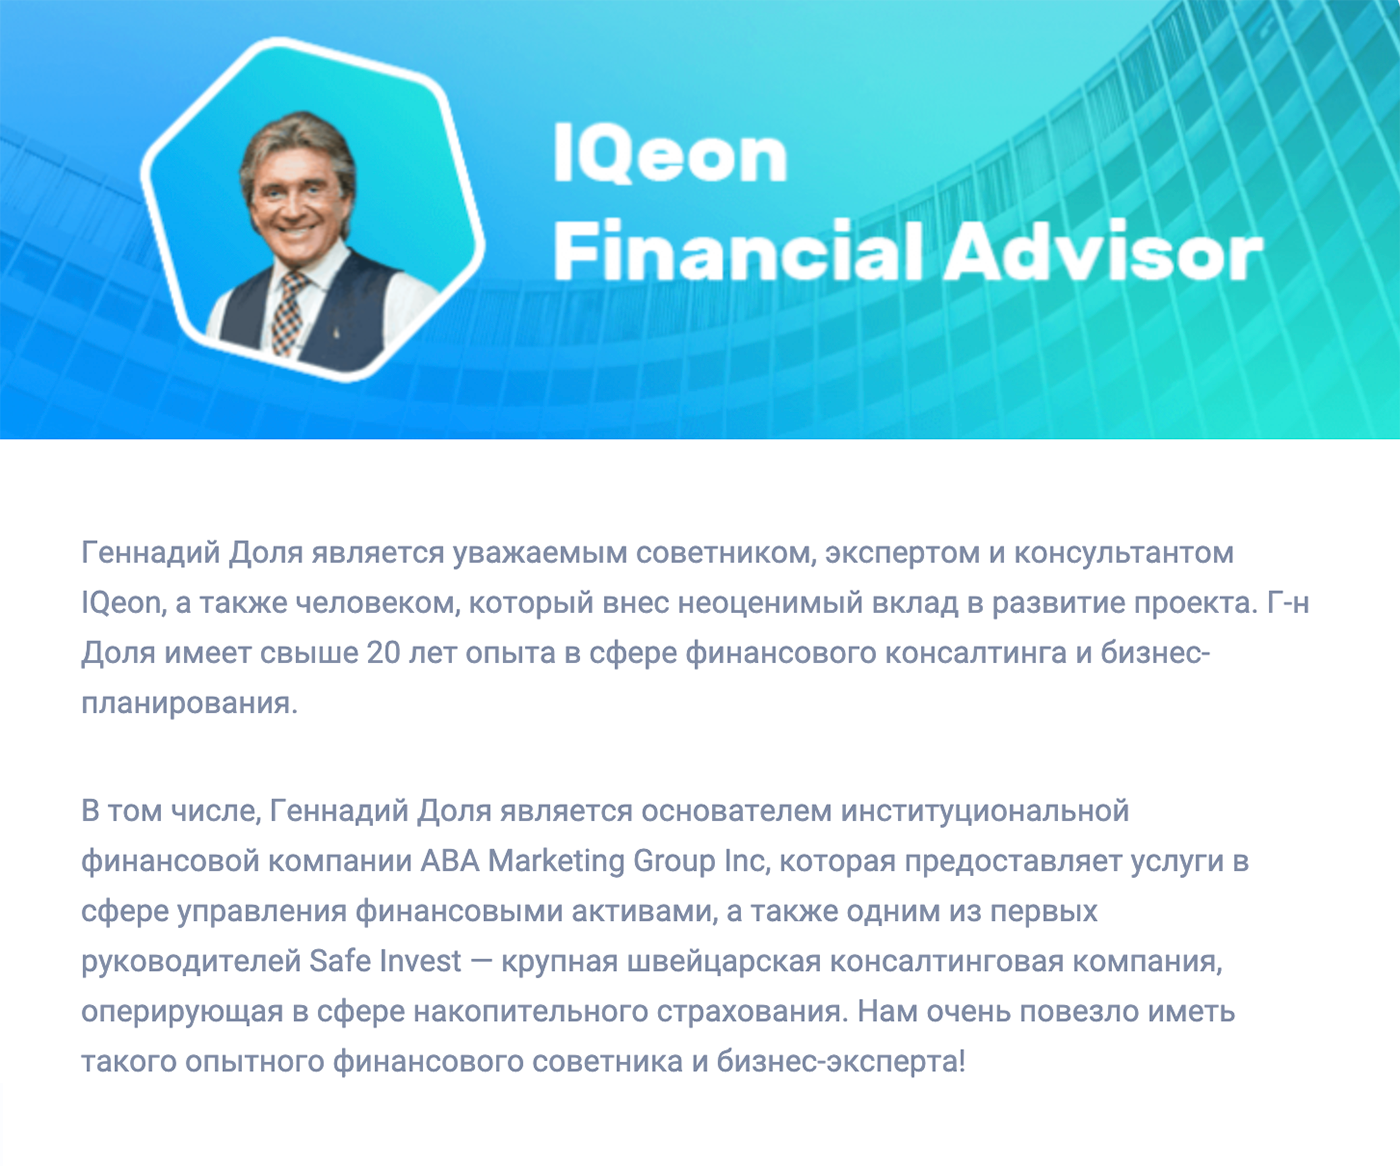 Криптовалютная платформа IQeon называет Долю директором крупной страховой компании Safe Invest, но не упоминает, что к этой компании было много вопросов у российских правоохранительных органов